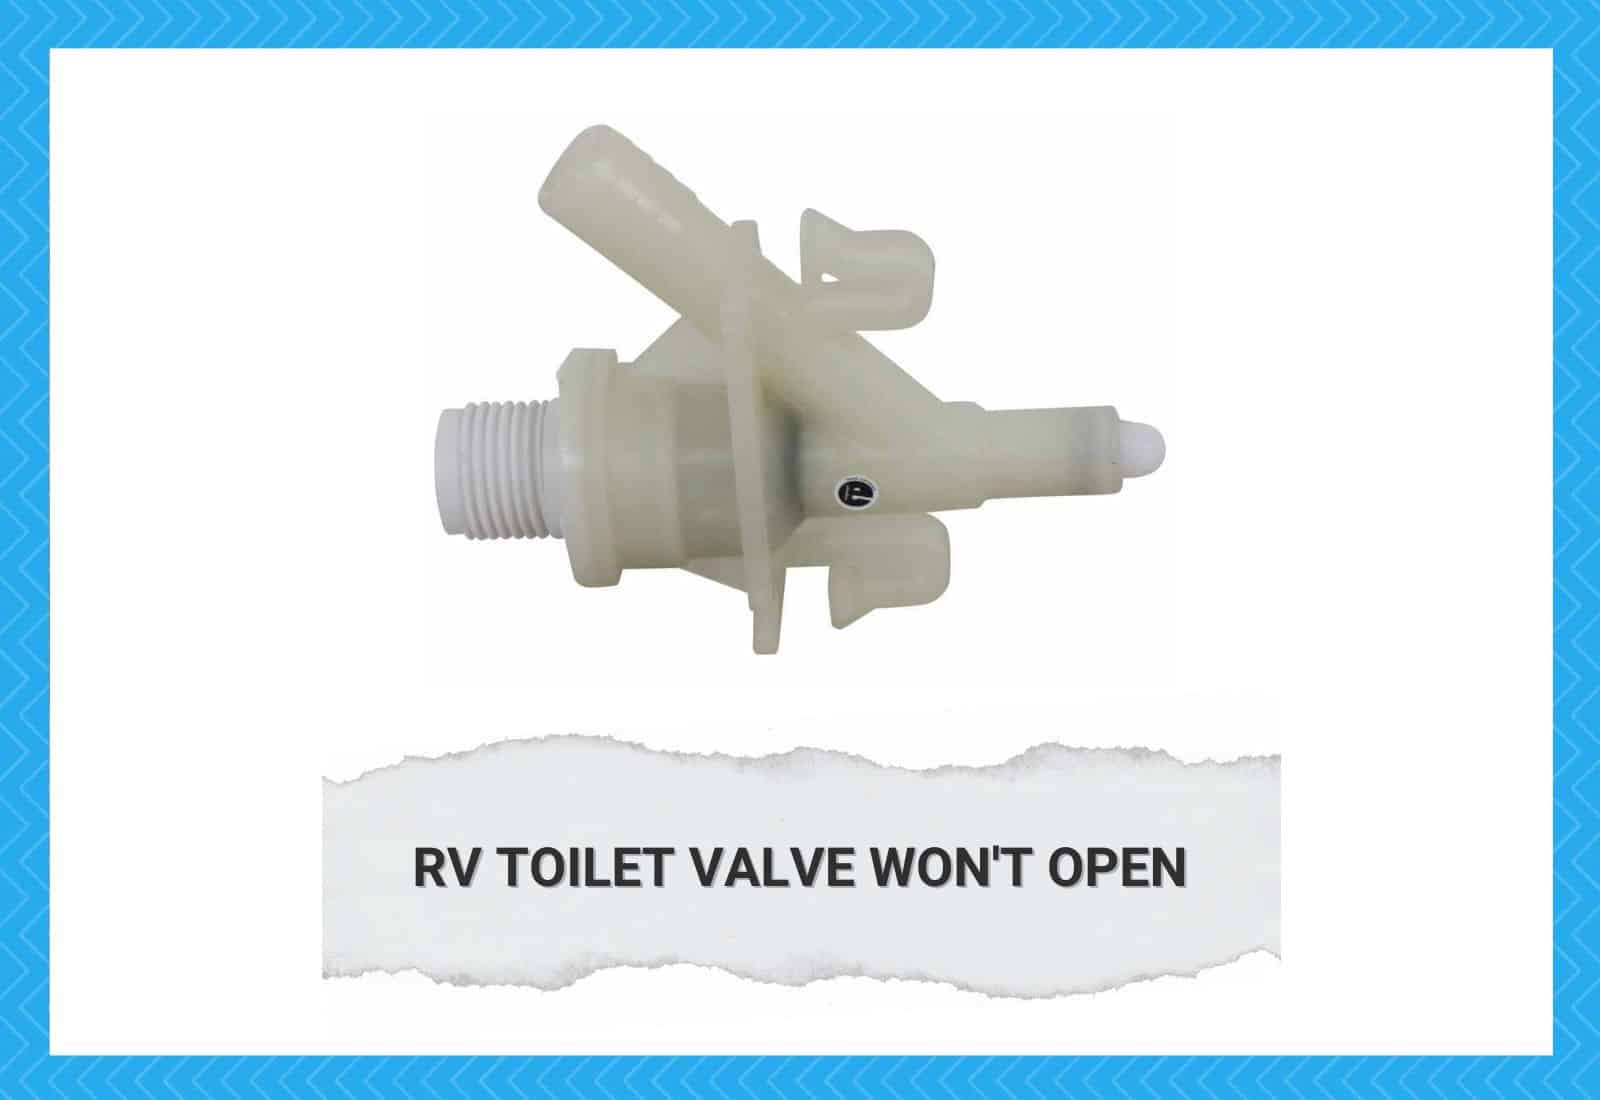 RV Toilet Valve Won't Open